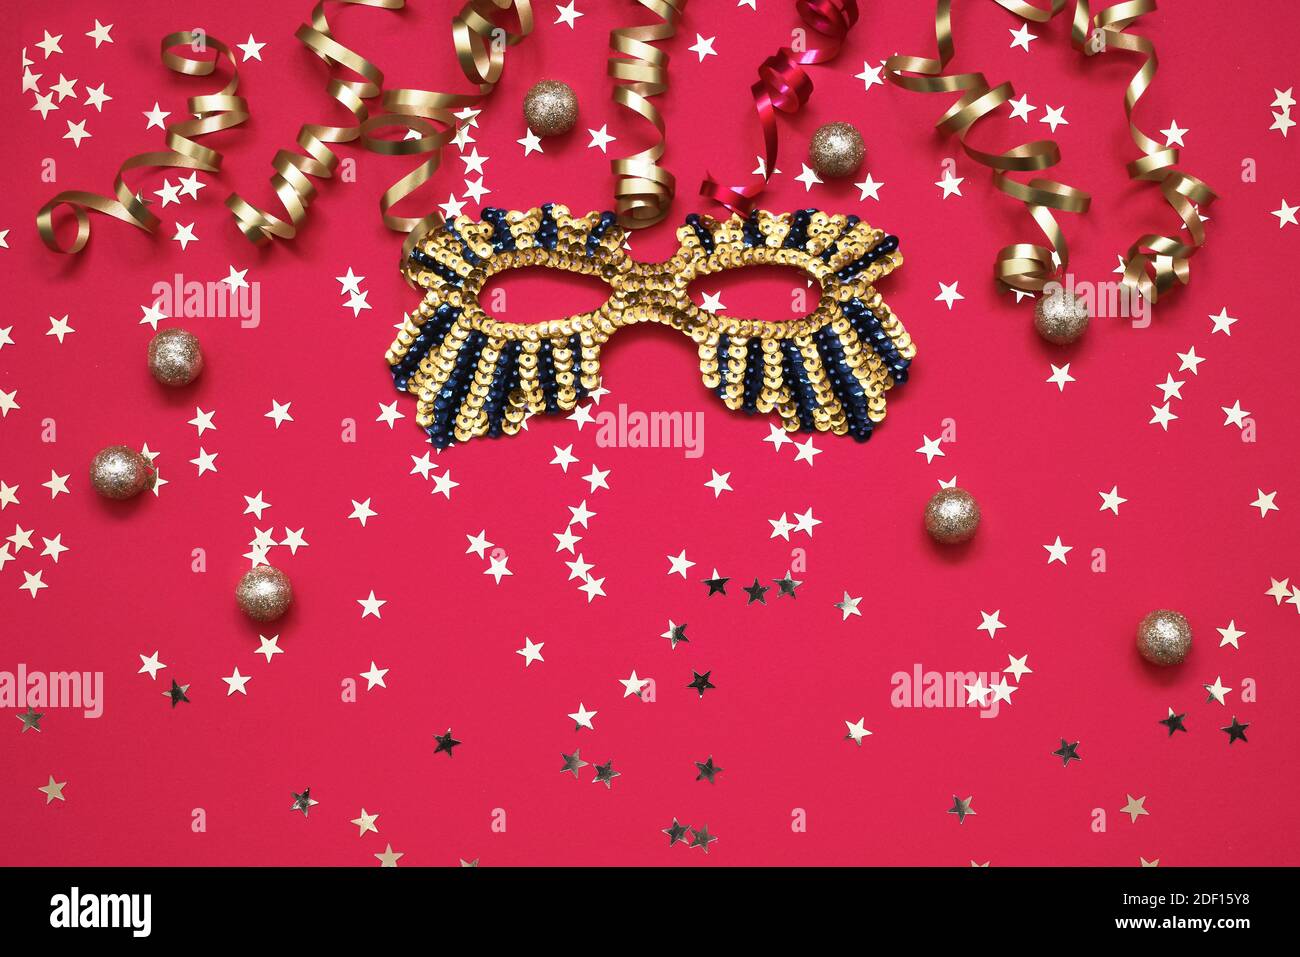 Masque étincelant doré, serpentine et étoiles dorées avec ornements de Noël sur fond rouge. Vue de dessus, espace de copie. Concept de célébration du Carnaval Banque D'Images